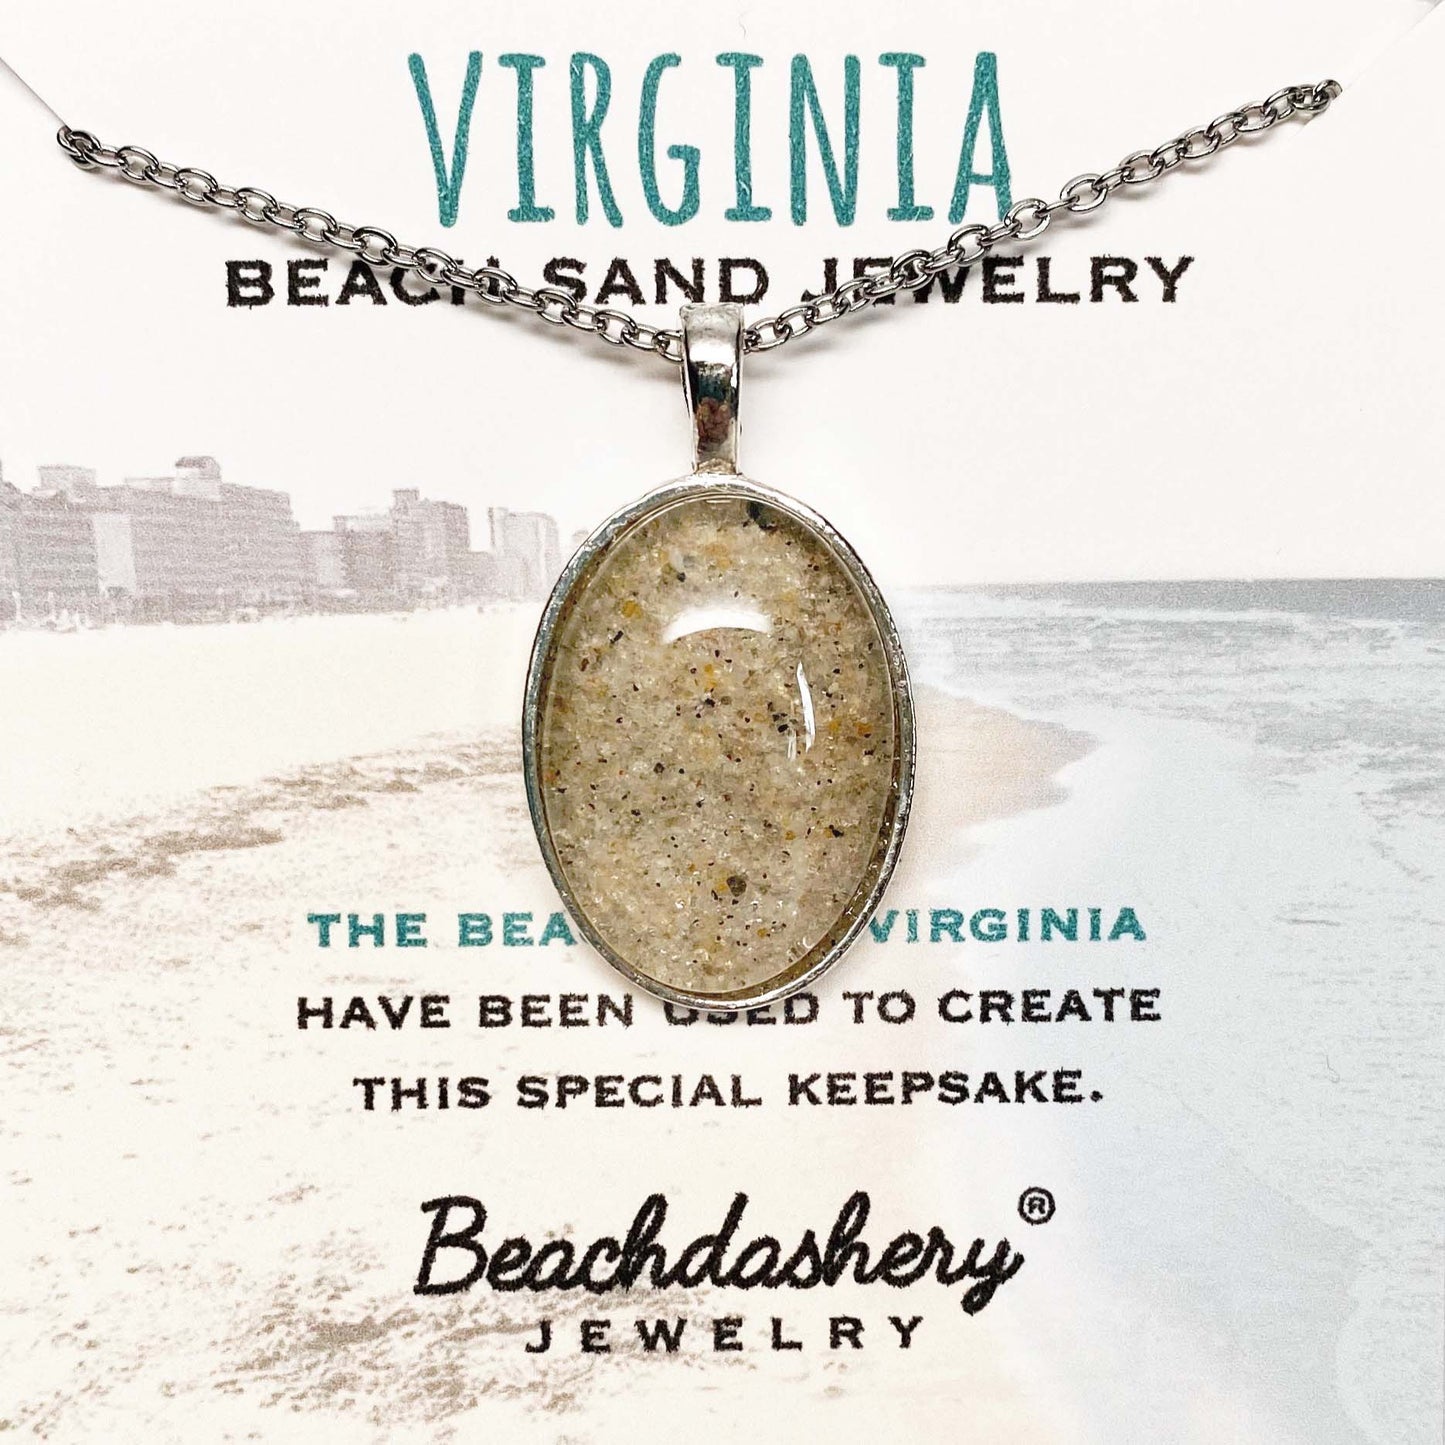 Virginia Beach Sand Jewelry Beachdashery® Jewelry